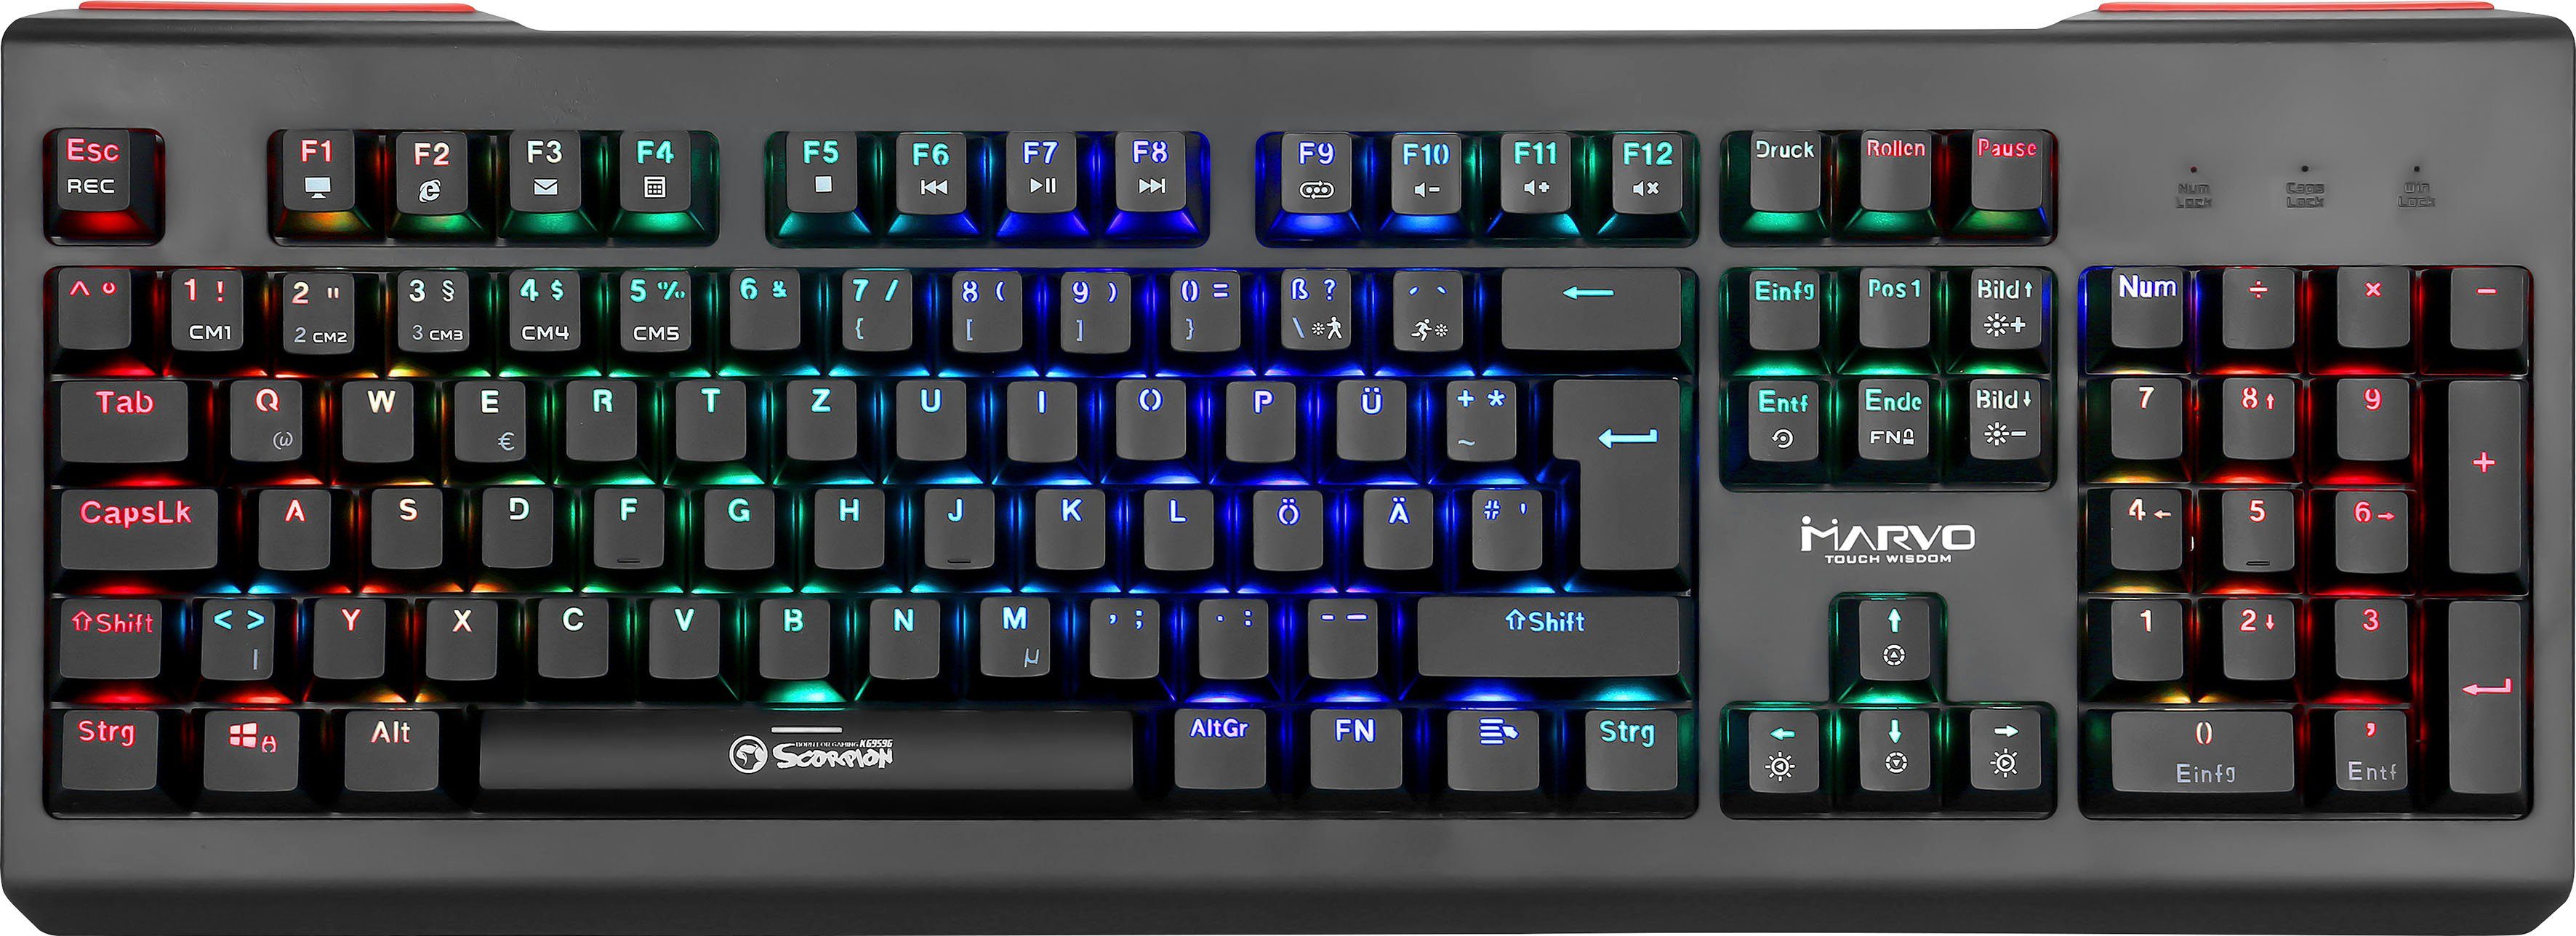 MARVO KG959G Gaming-Tastatur